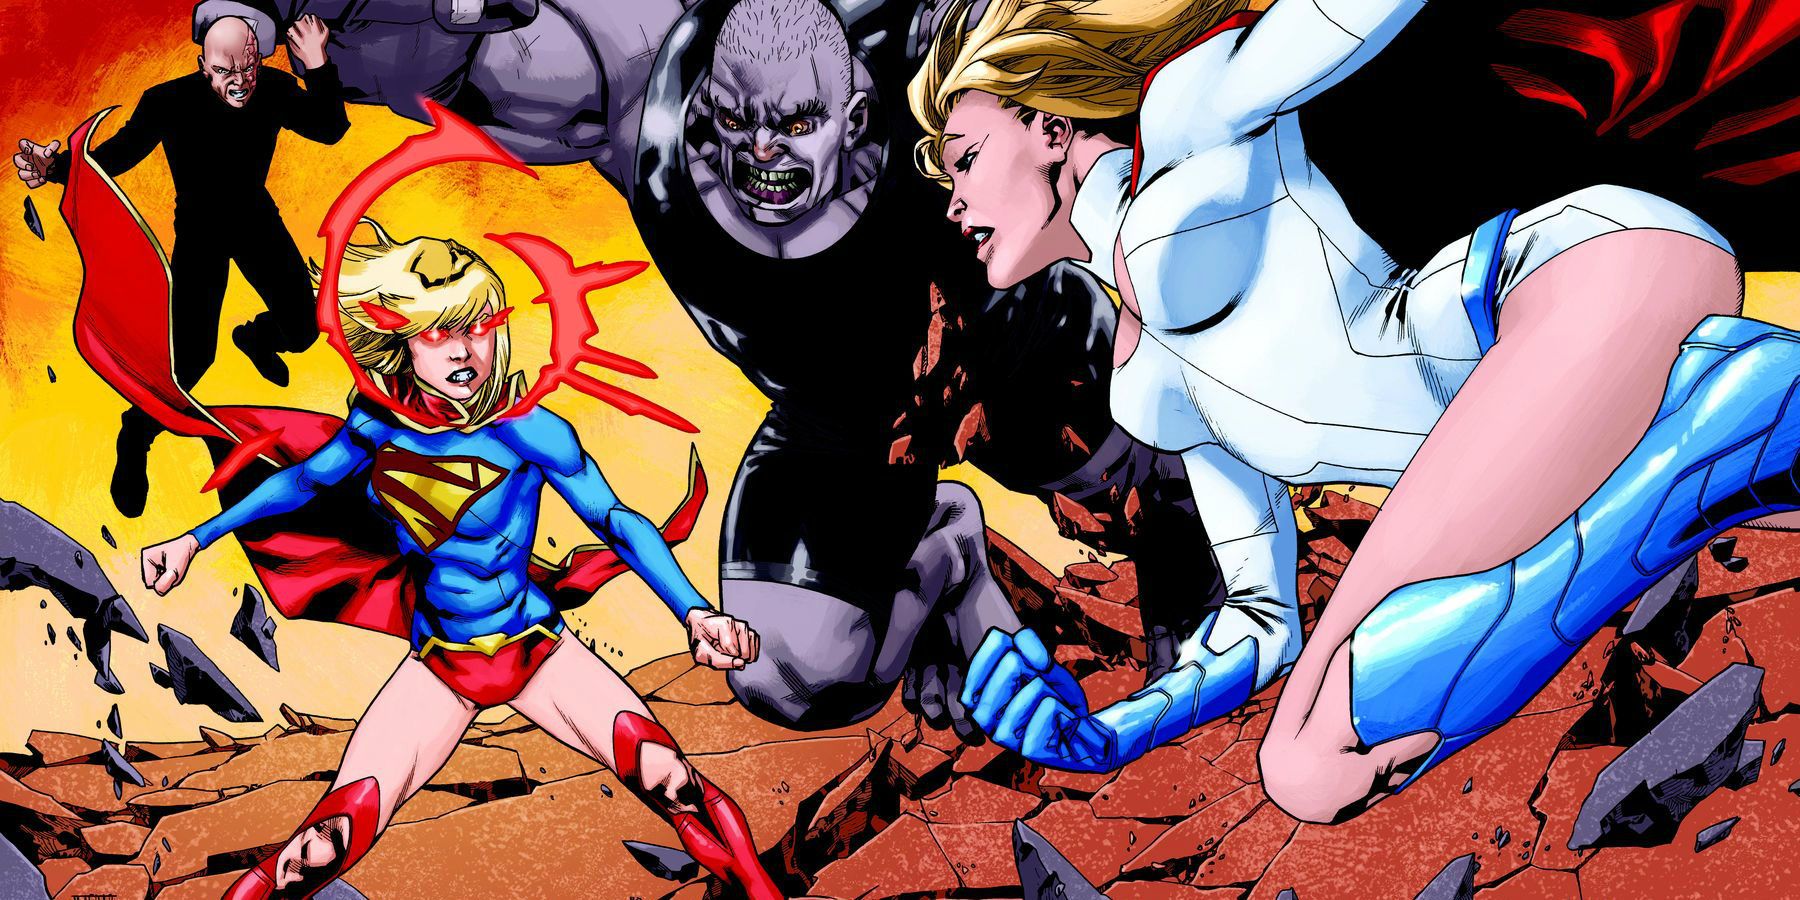 Power Girl Battling Super Girl from DC Comics